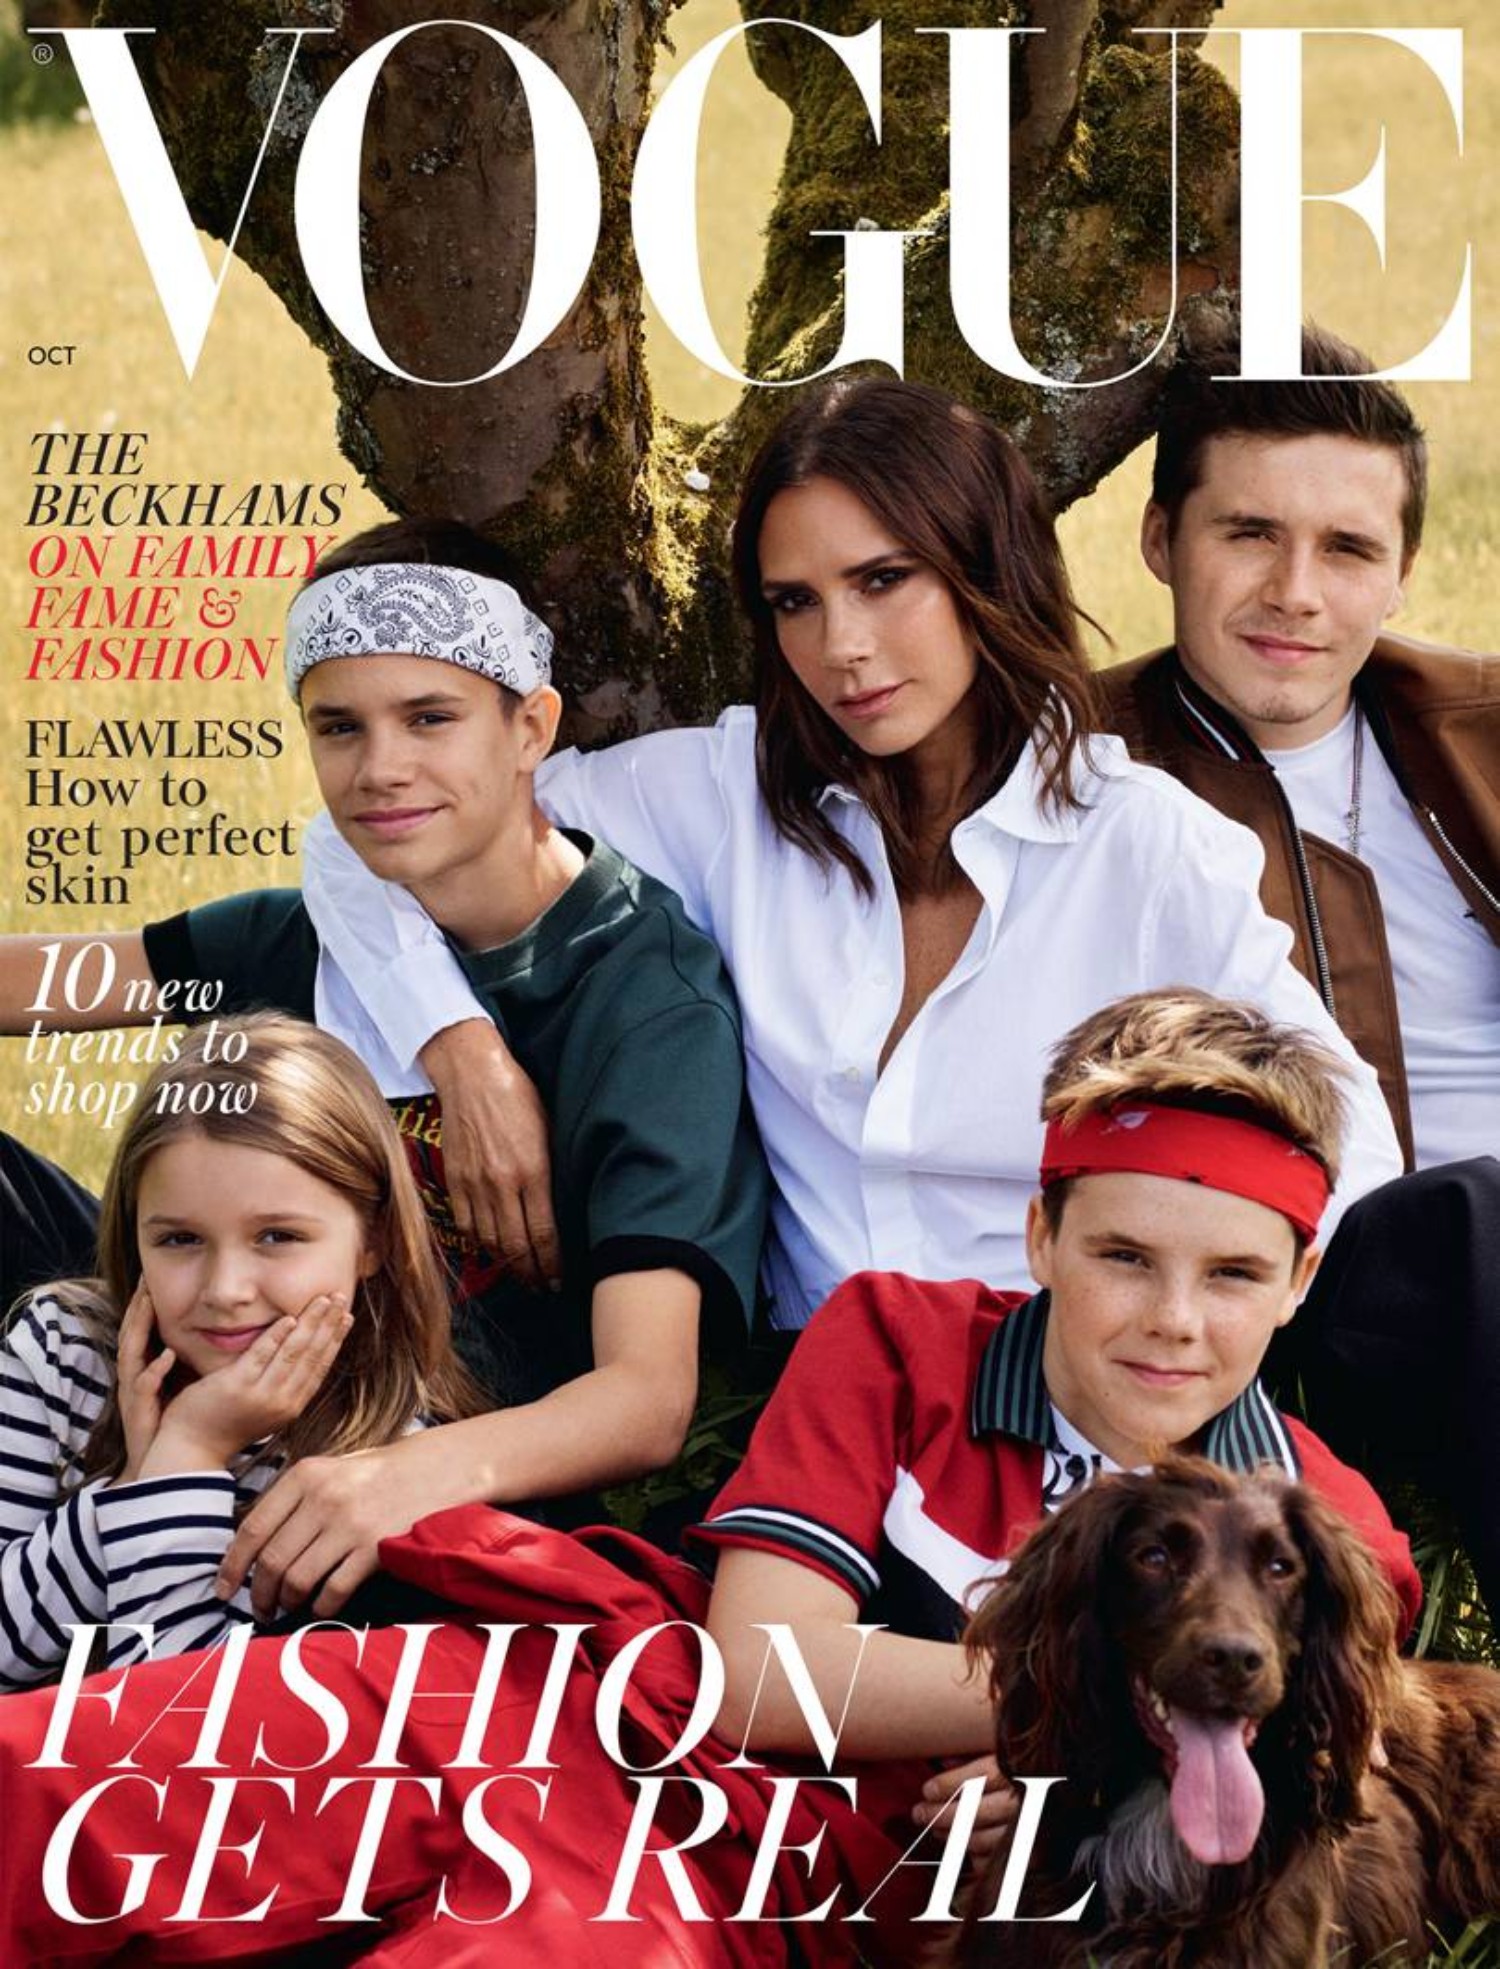 The Beckhams Cover British Vogue to Celebrate a Decade of Victoria Beckham